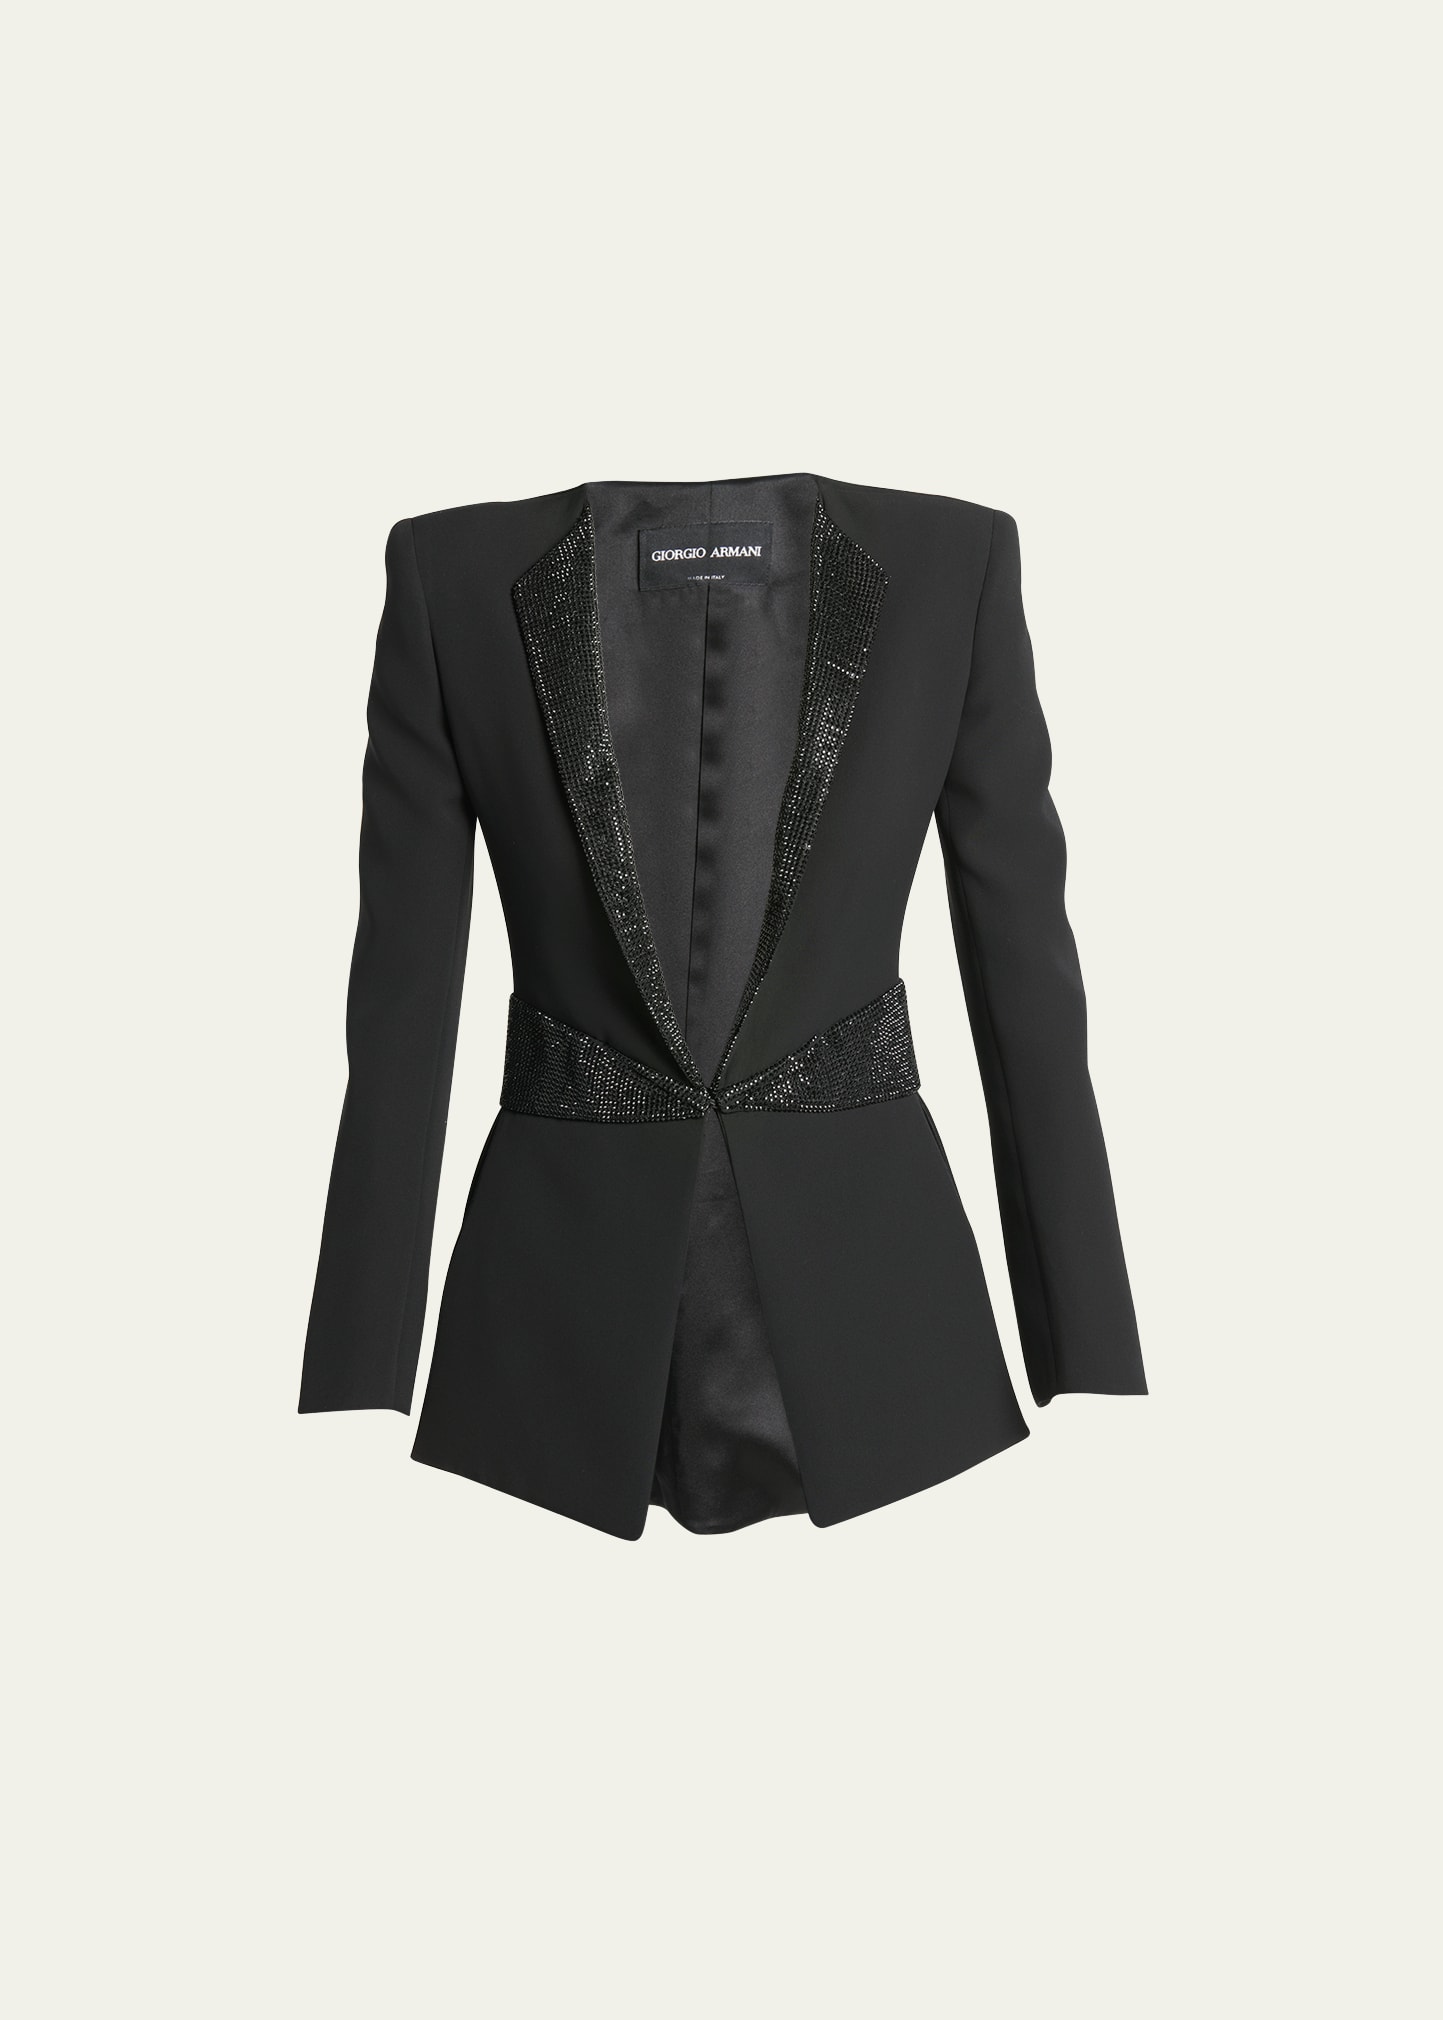 Giorgio Armani Embellished Tuxedo Jacket In Solid Black